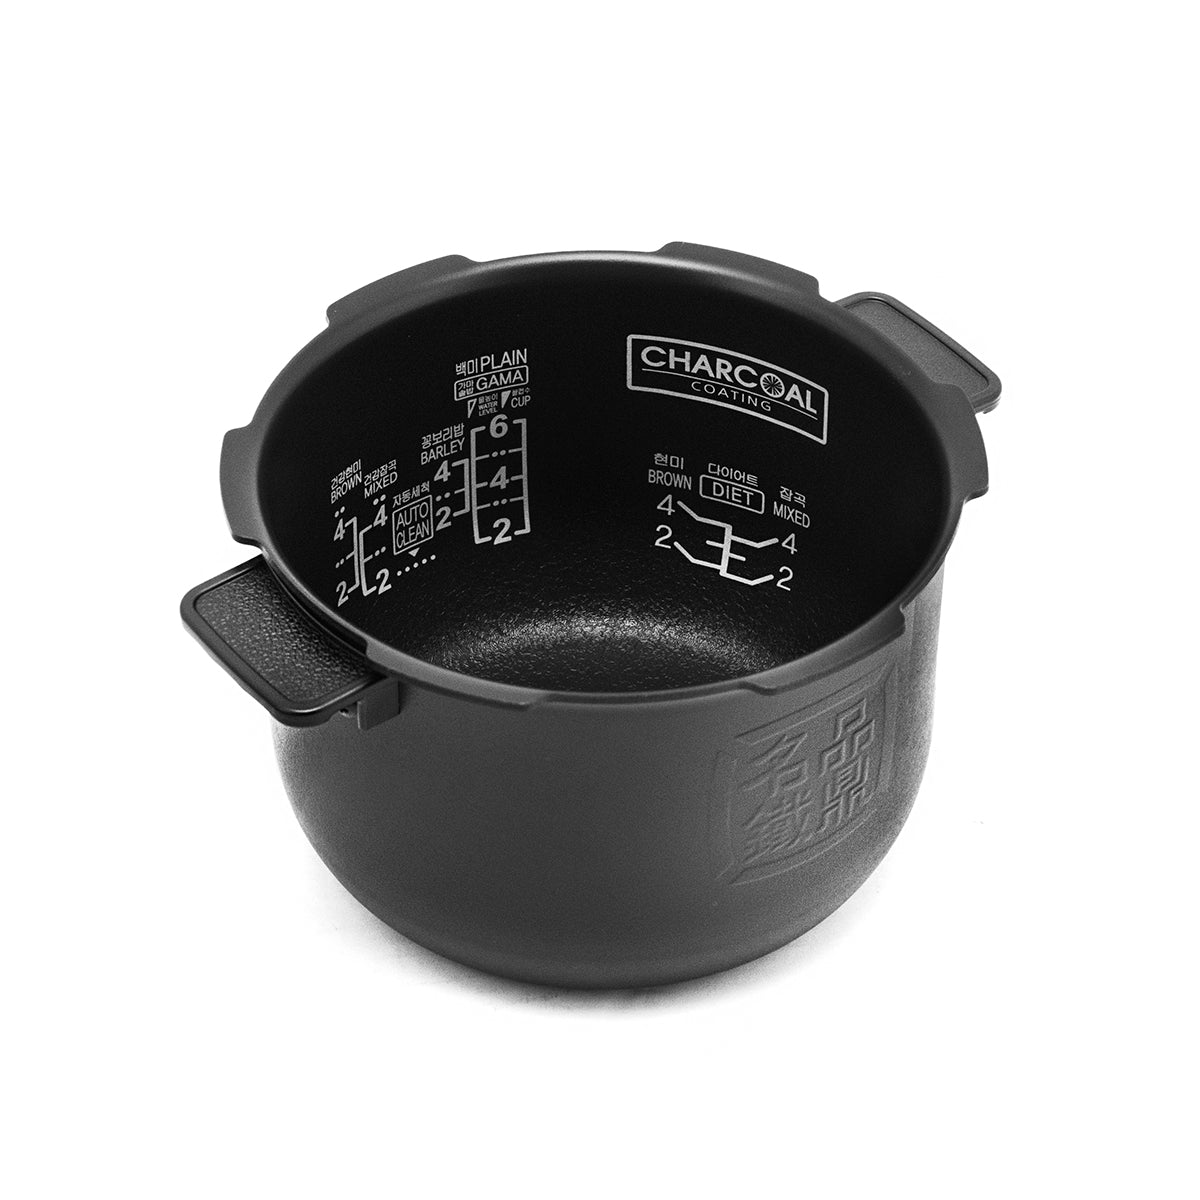 Cuchen Inner Pot for Rice Cooker CJH-PA0604iC (6-Cup) - Cuchen US